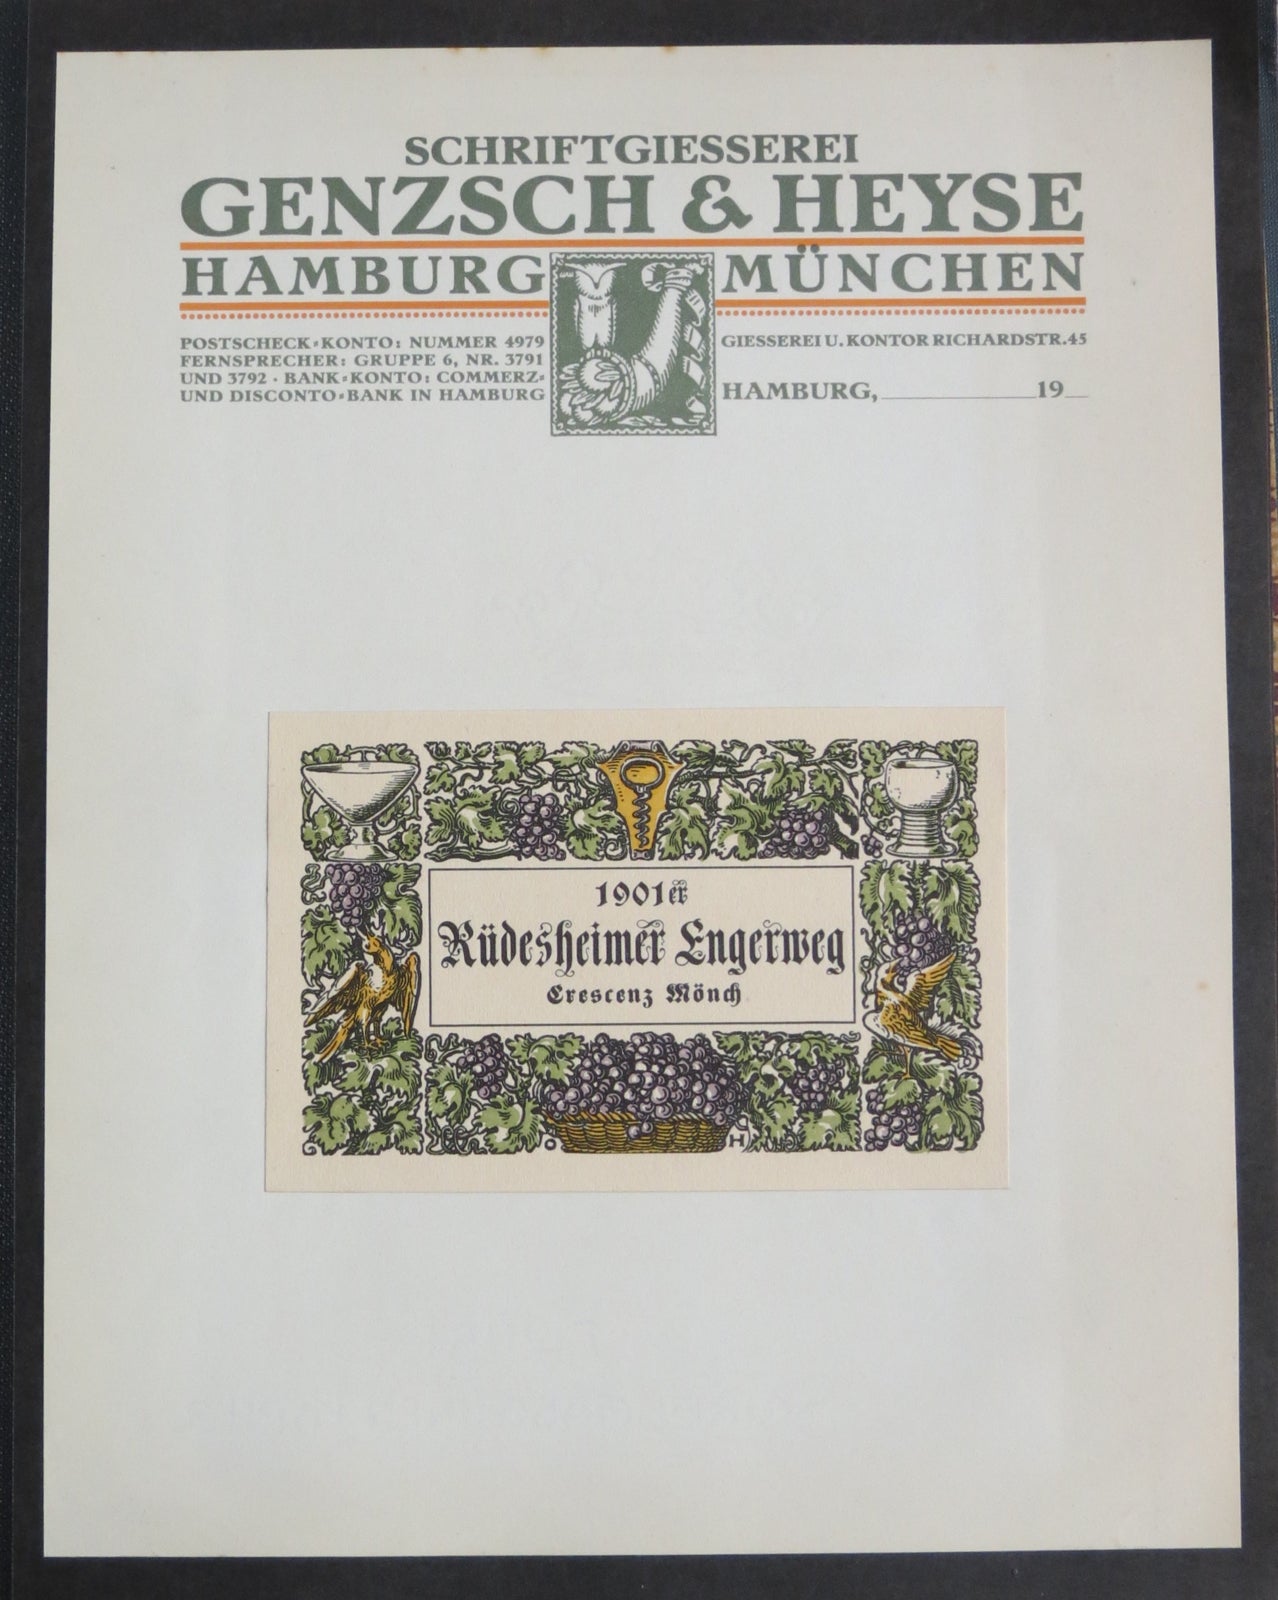 Item #16486 Album of typographic specimens. Genzsch, Henze Schriftgiesserei.